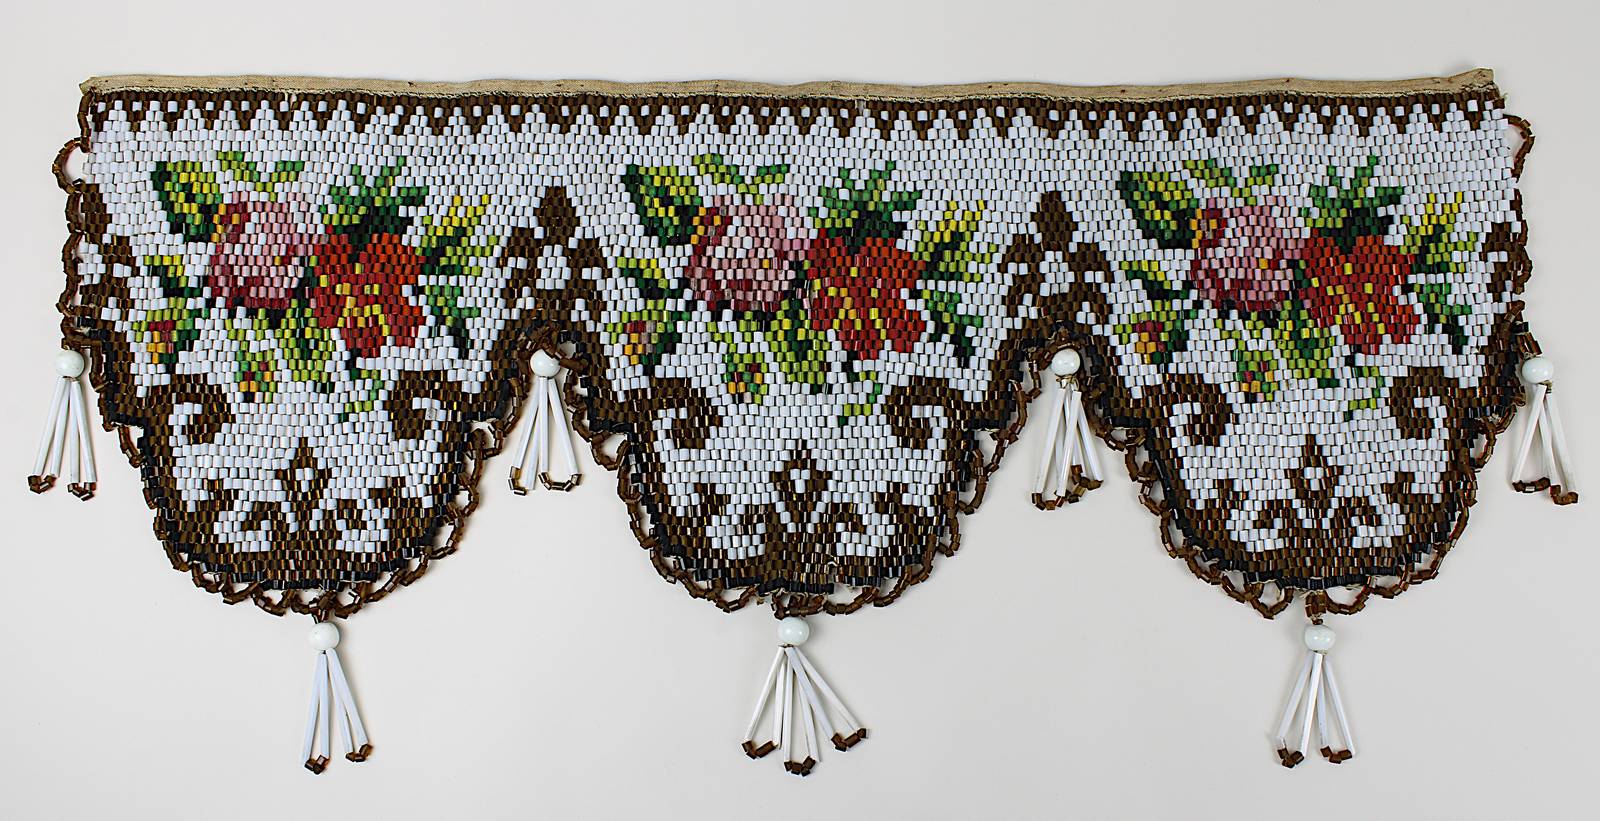 Dekorativer Behang aus Glasperlen, wohl Böhmen, M. 19. Jh., mit farbigen zylindrischen Glasperlchen,